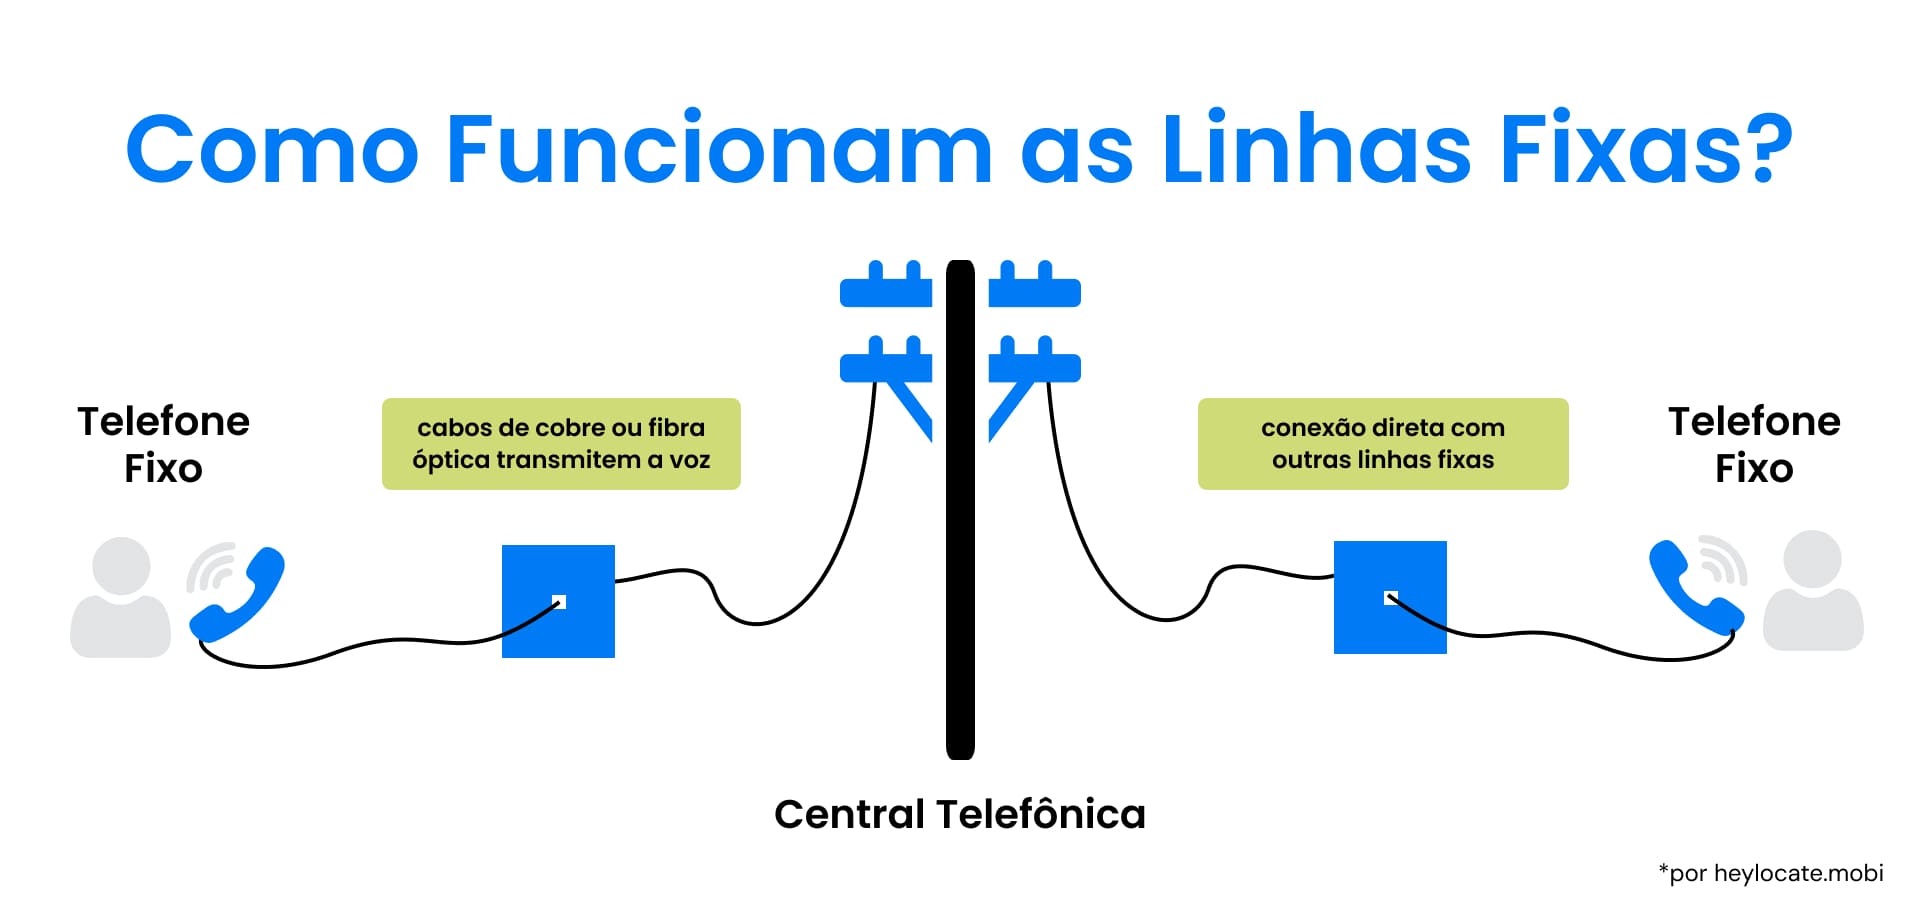 Entendendo as conexões de telefones fixos: O percurso de uma chamada de voz de um telefone fixo para outro por meio da central telefônica